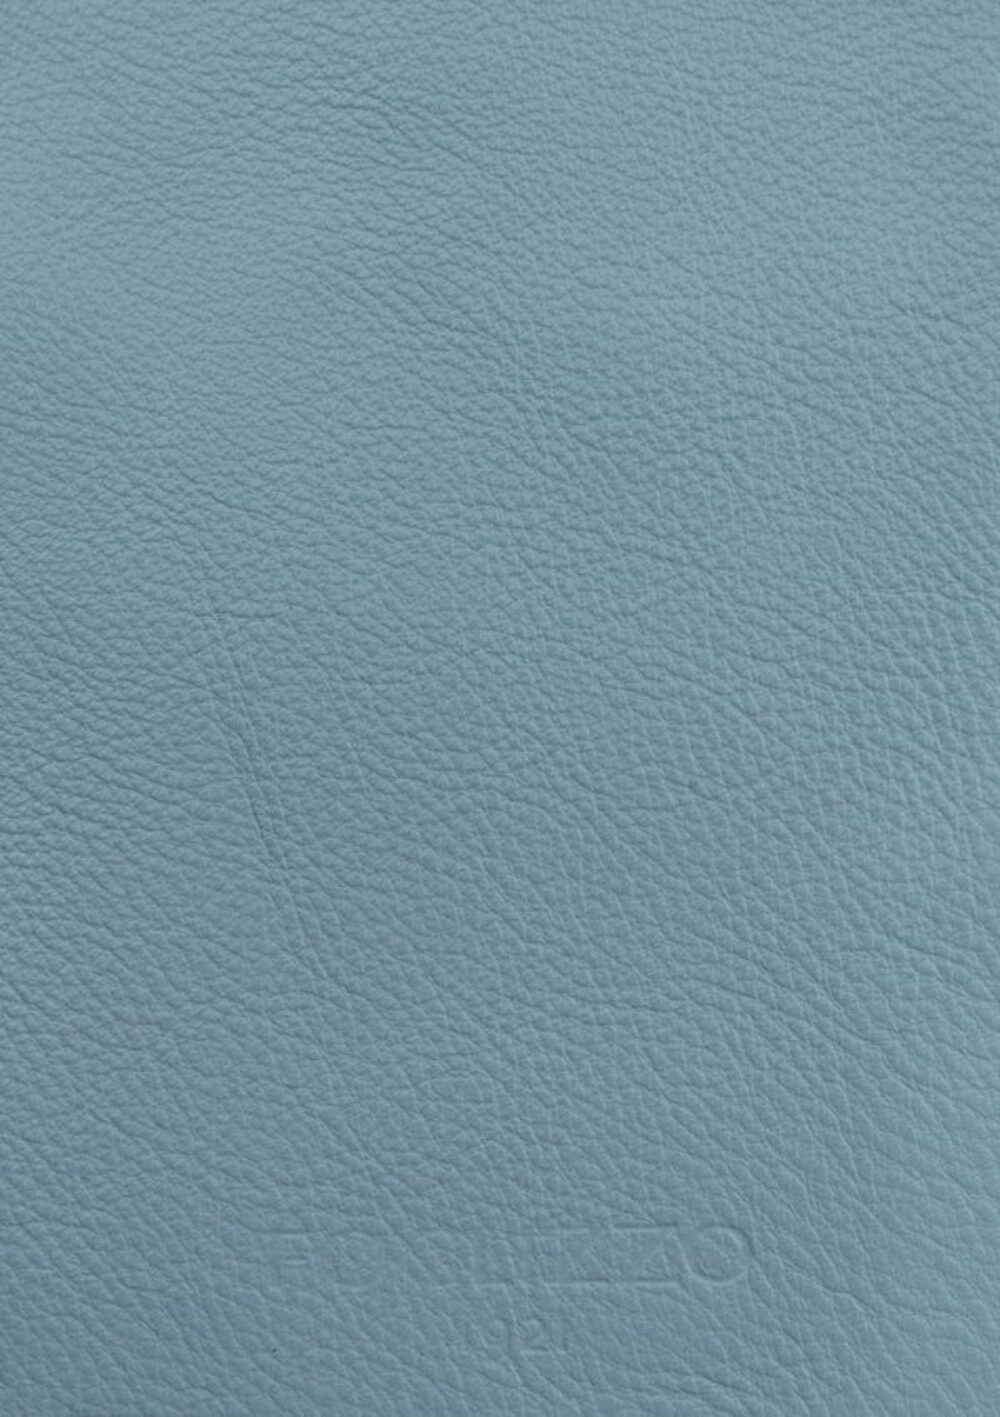 Diseño de lujo y alfombras de alta gama hechas a medida • Baby Blue Azur Jade